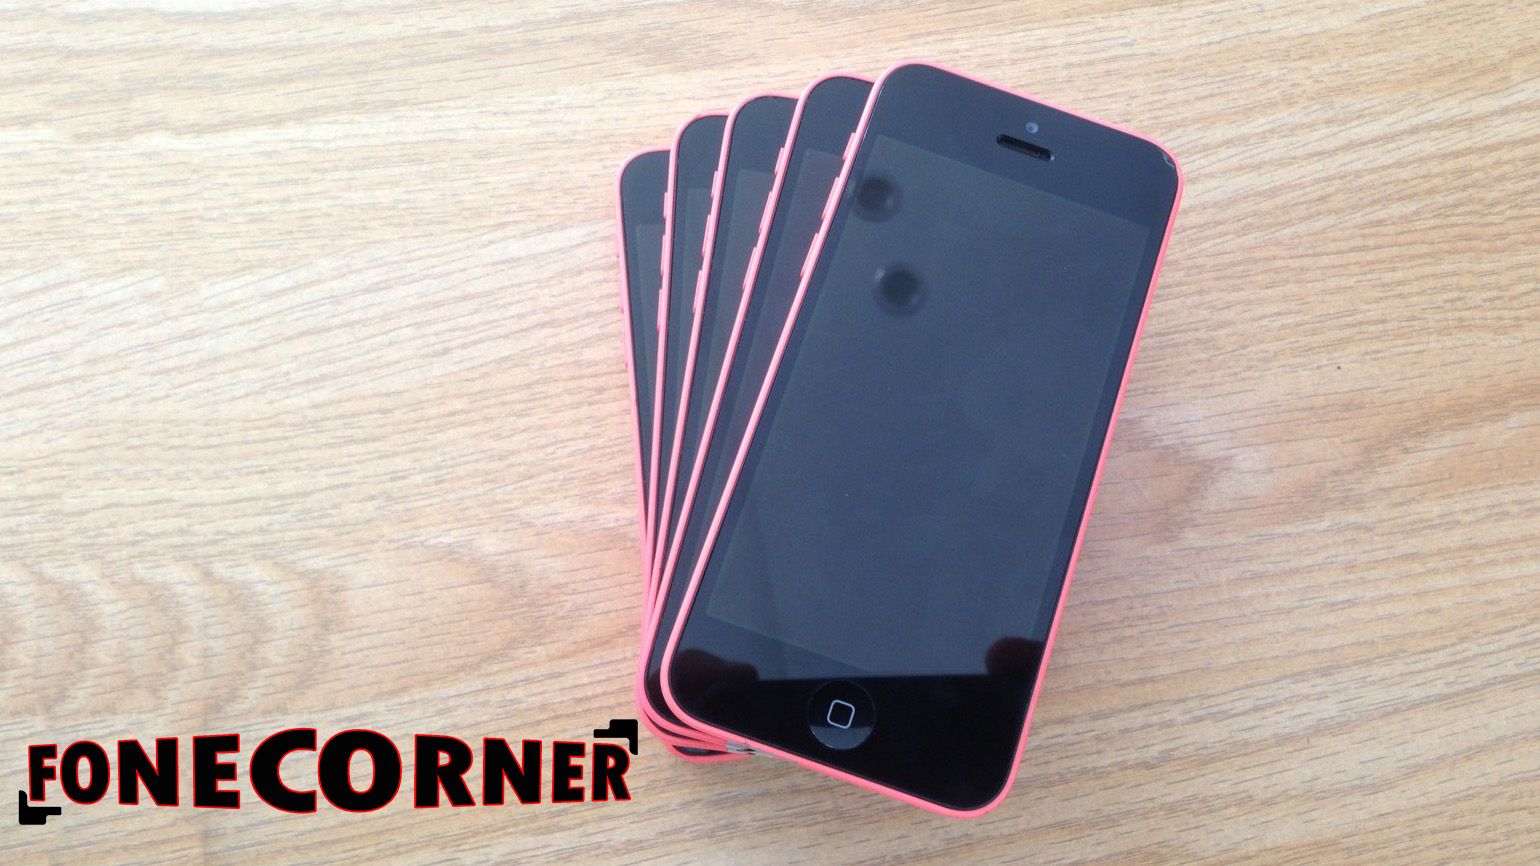 Fonecorner.com về hàng iphone 5, 5c, 5s giá rẻ cho anh em - 2